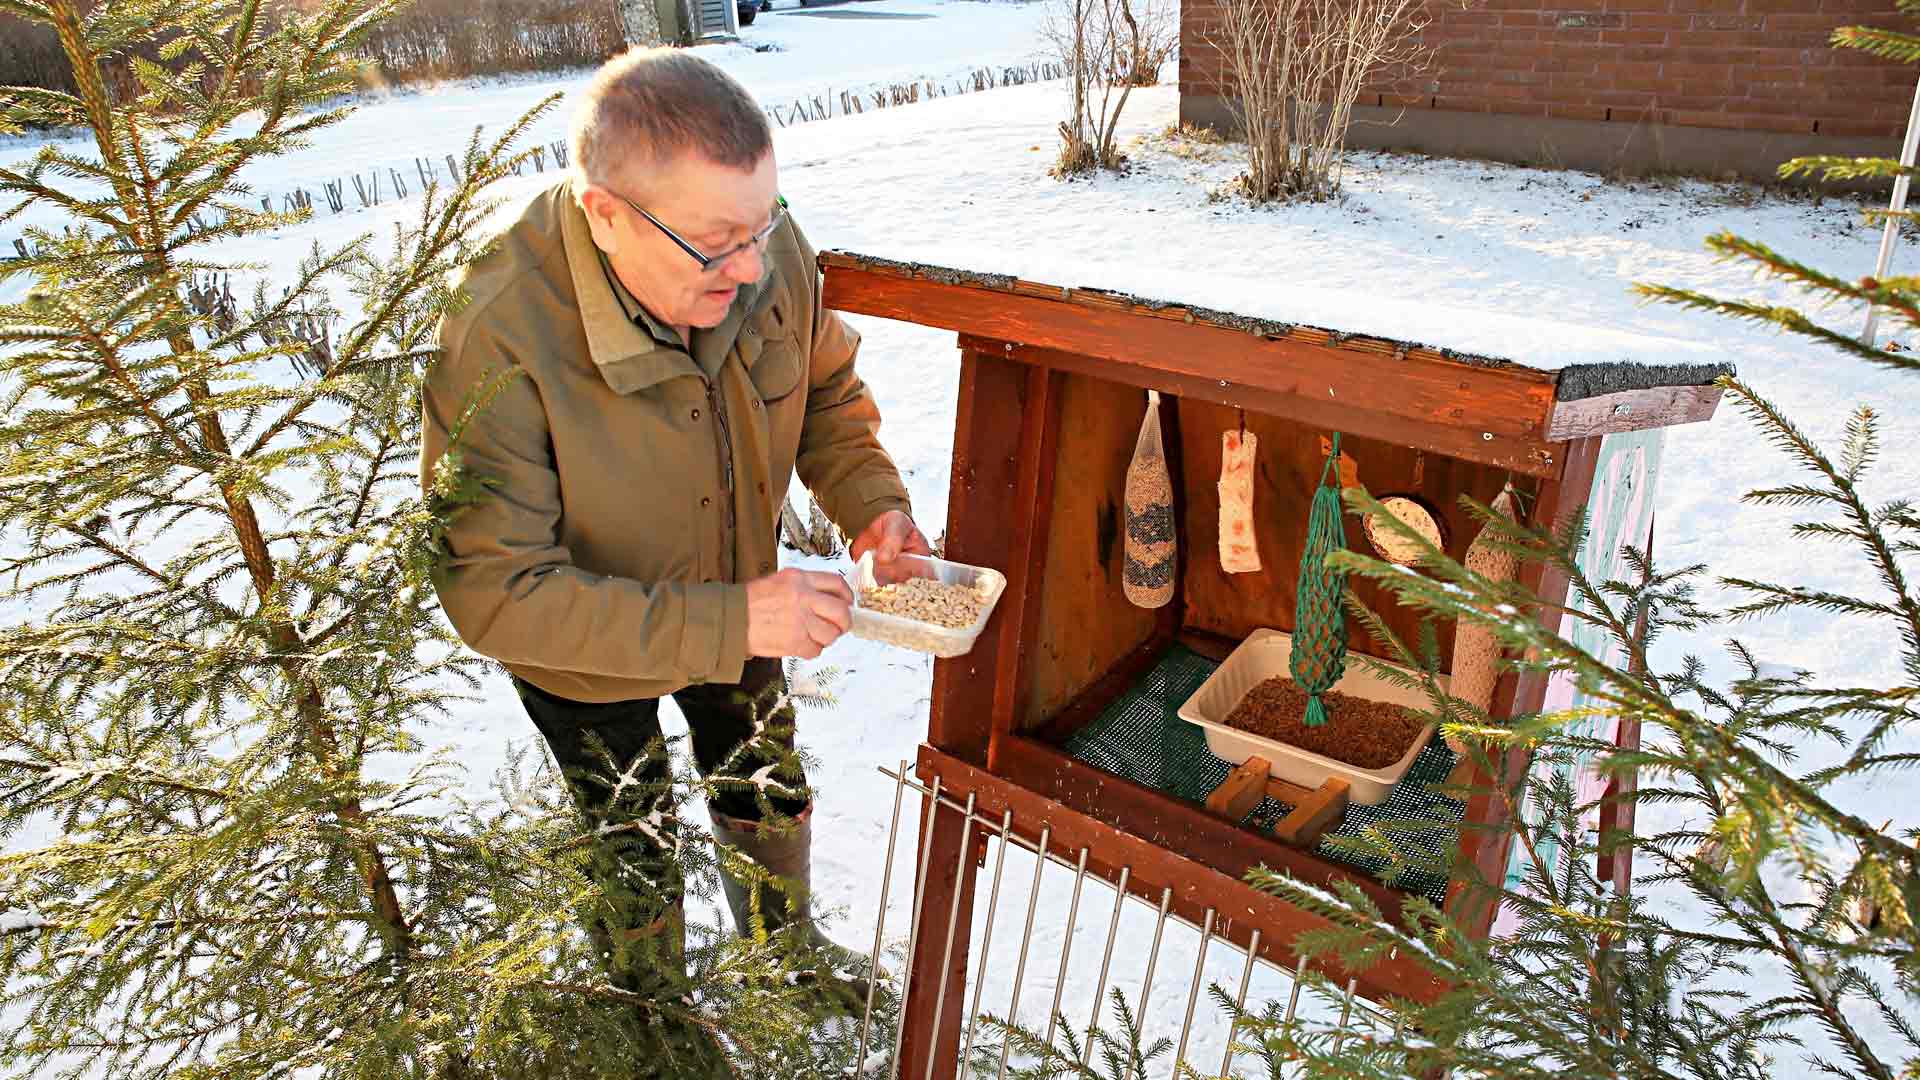 Risto Soljennon ruokintapaikka on Kerimäen keskustan tiaisille tuttu paikka jo monen vuoden ajalta.